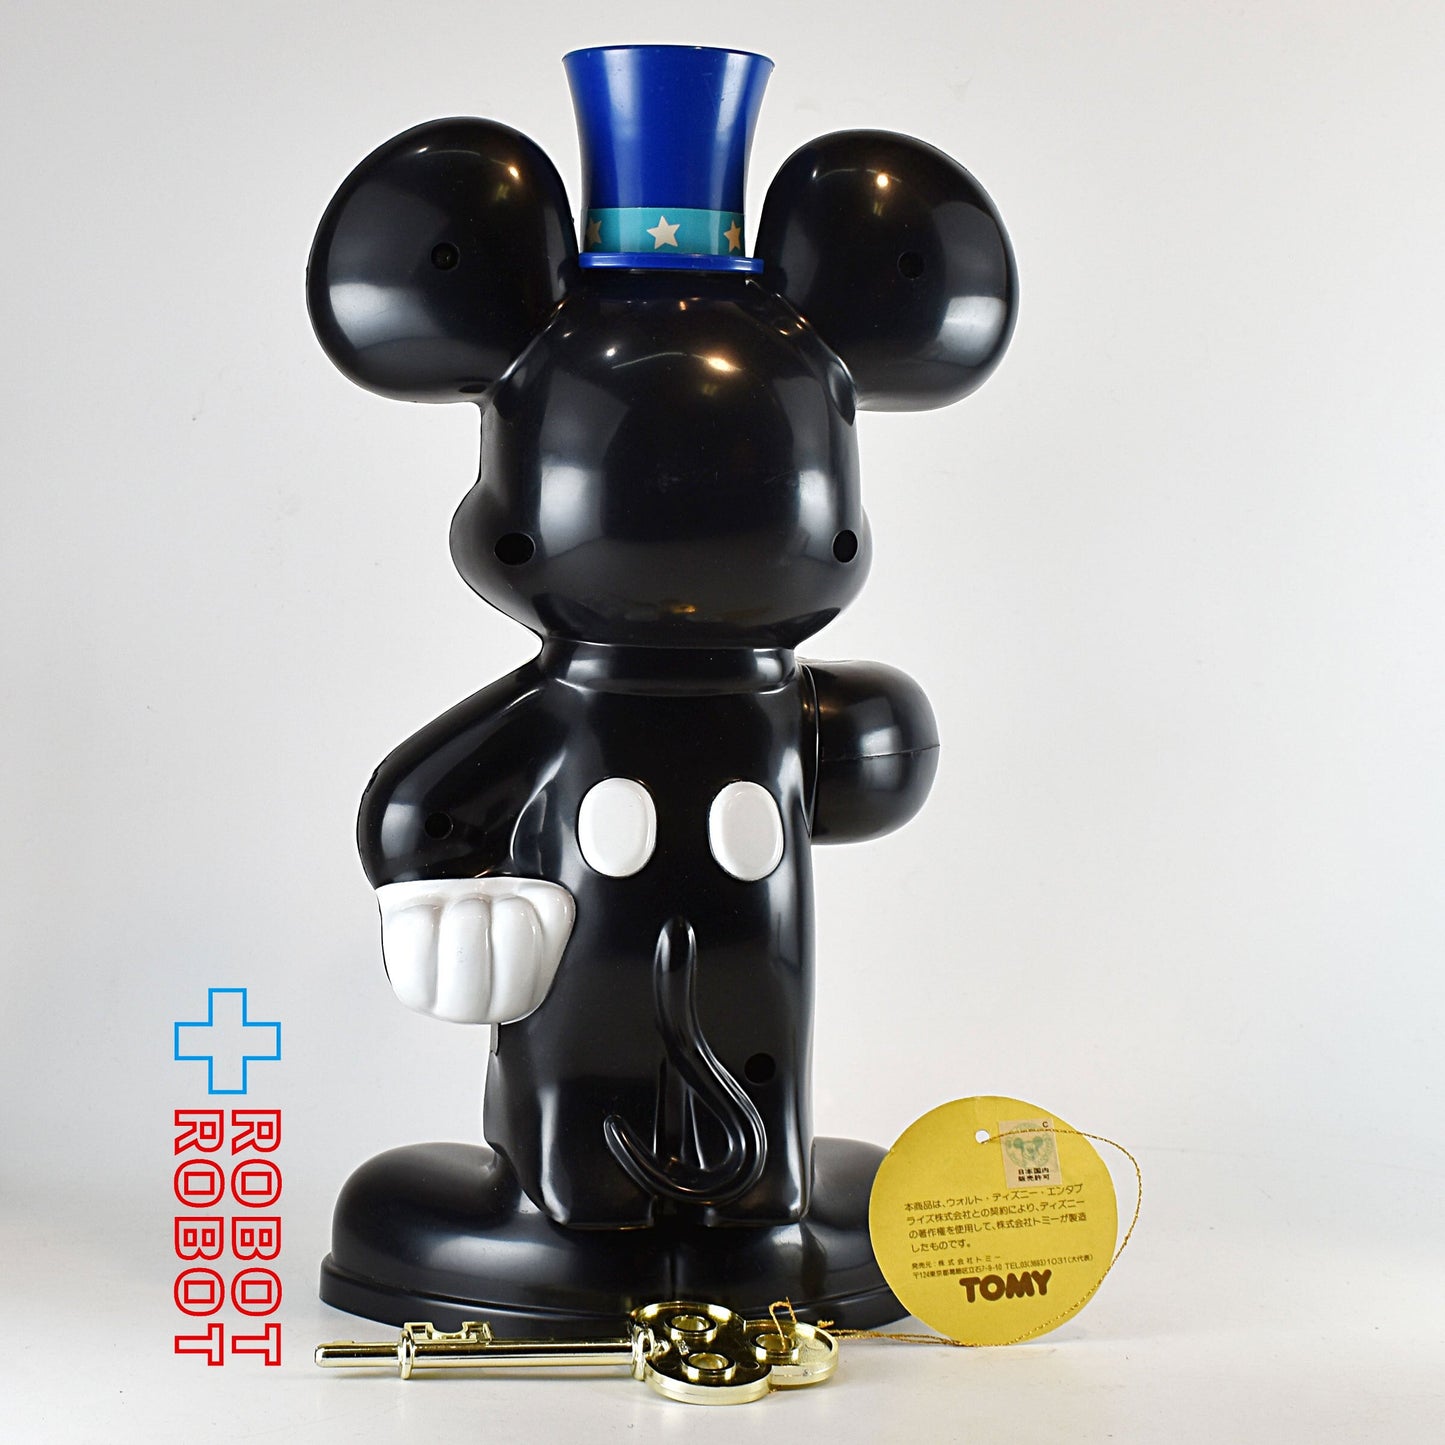 トミー ディズニー ミッキーマウス ミッキーのリッチマンバンク プラスチック貯金箱フィギュア 箱入